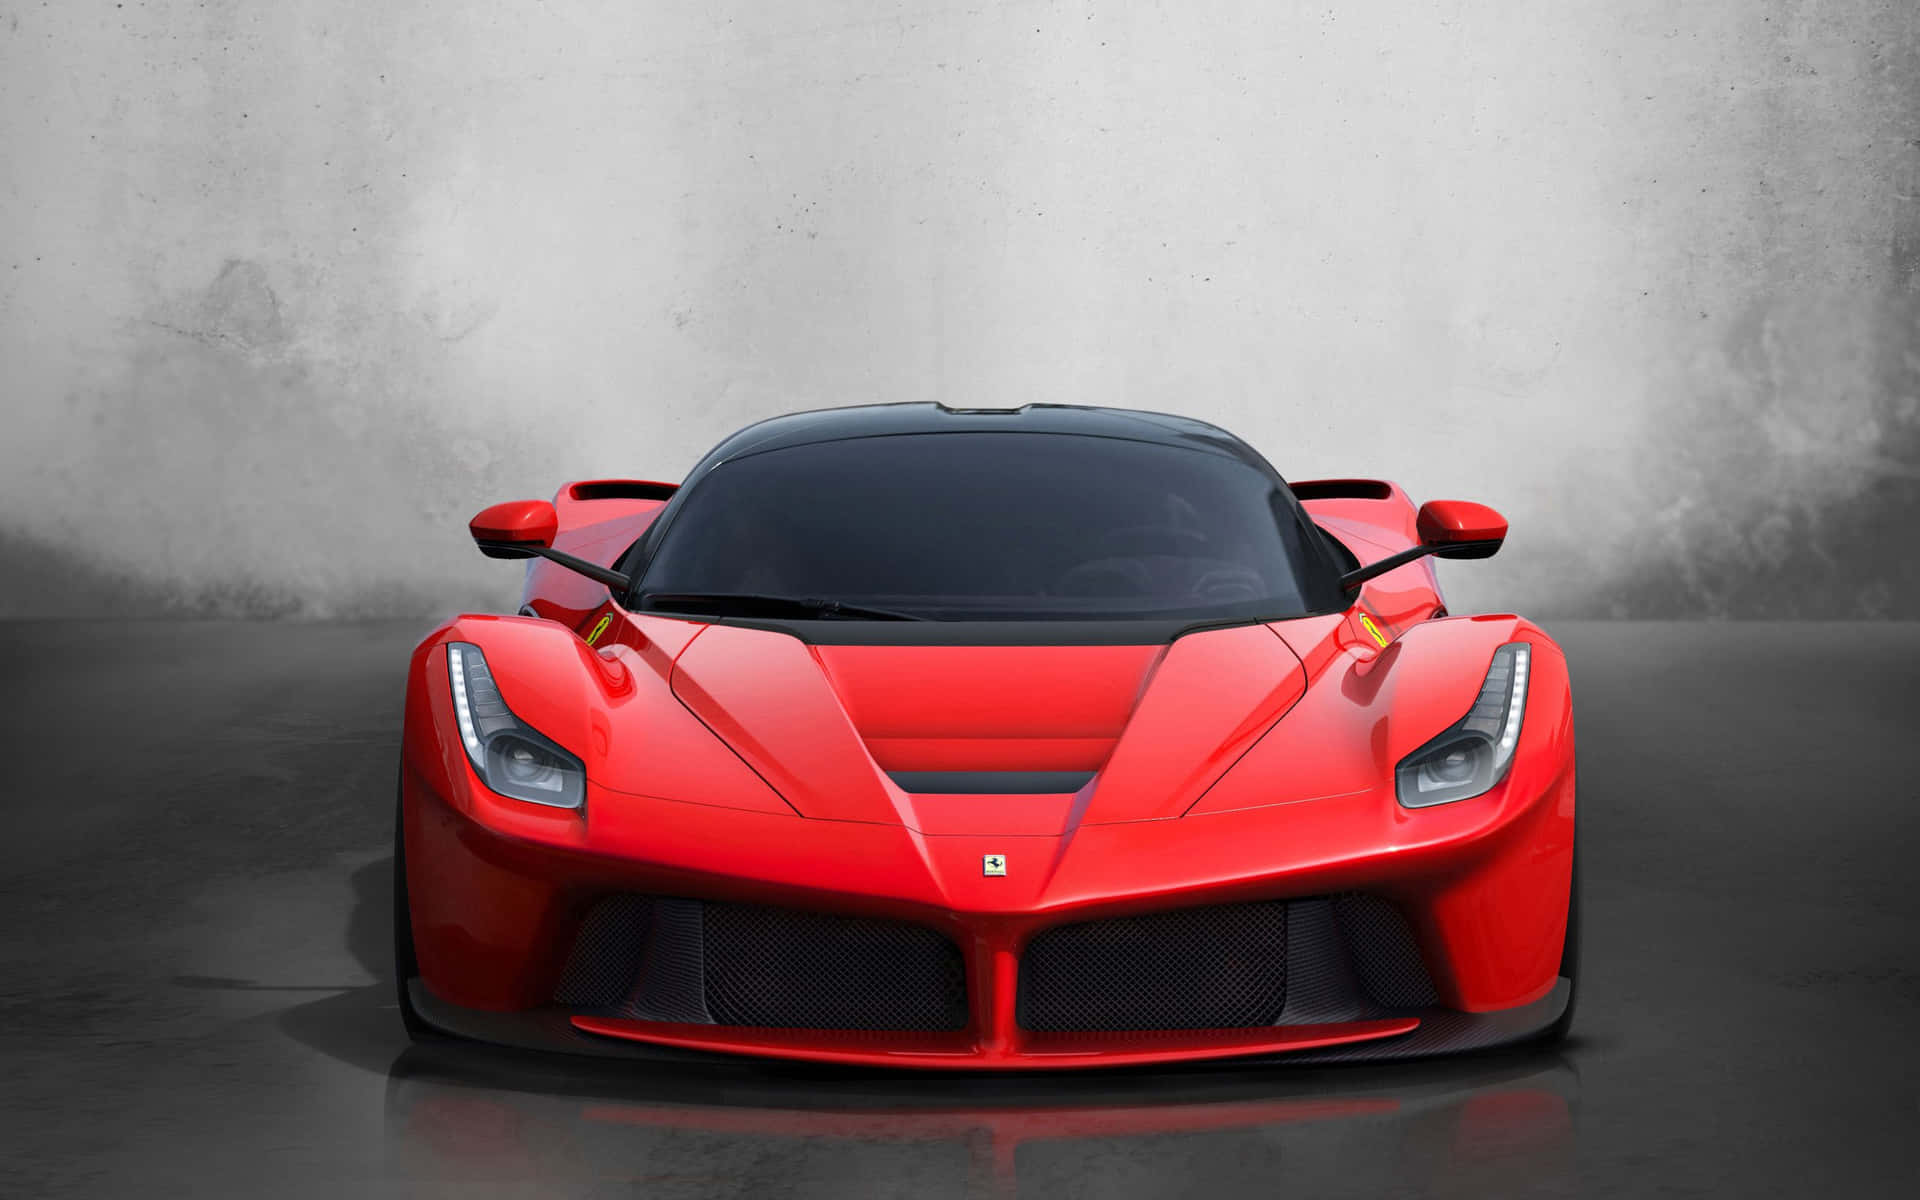 Cool 3d Red Ferrari Car Picture